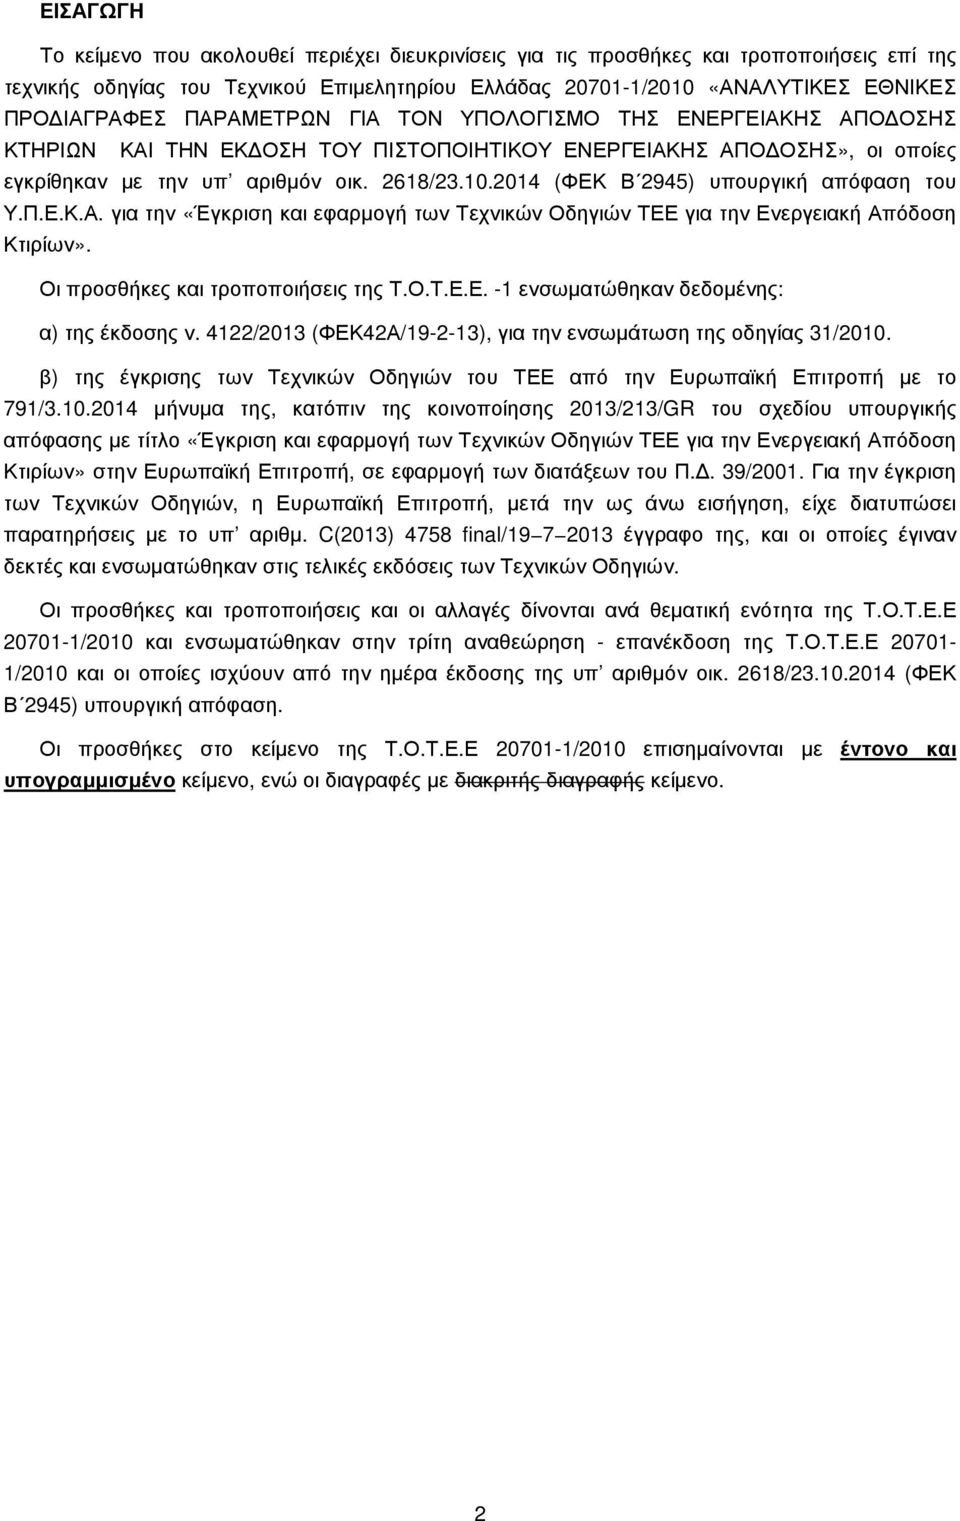 2014 (ΦΕΚ Β 2945) υπουργική απόφαση του Υ.Π.Ε.Κ.Α. για την «Έγκριση και εφαρµογή των Τεχνικών Οδηγιών ΤΕΕ για την Ενεργειακή Απόδοση Κτιρίων». Οι προσθήκες και τροποποιήσεις της Τ.Ο.Τ.Ε.Ε. -1 ενσωµατώθηκαν δεδοµένης: α) της έκδοσης ν.